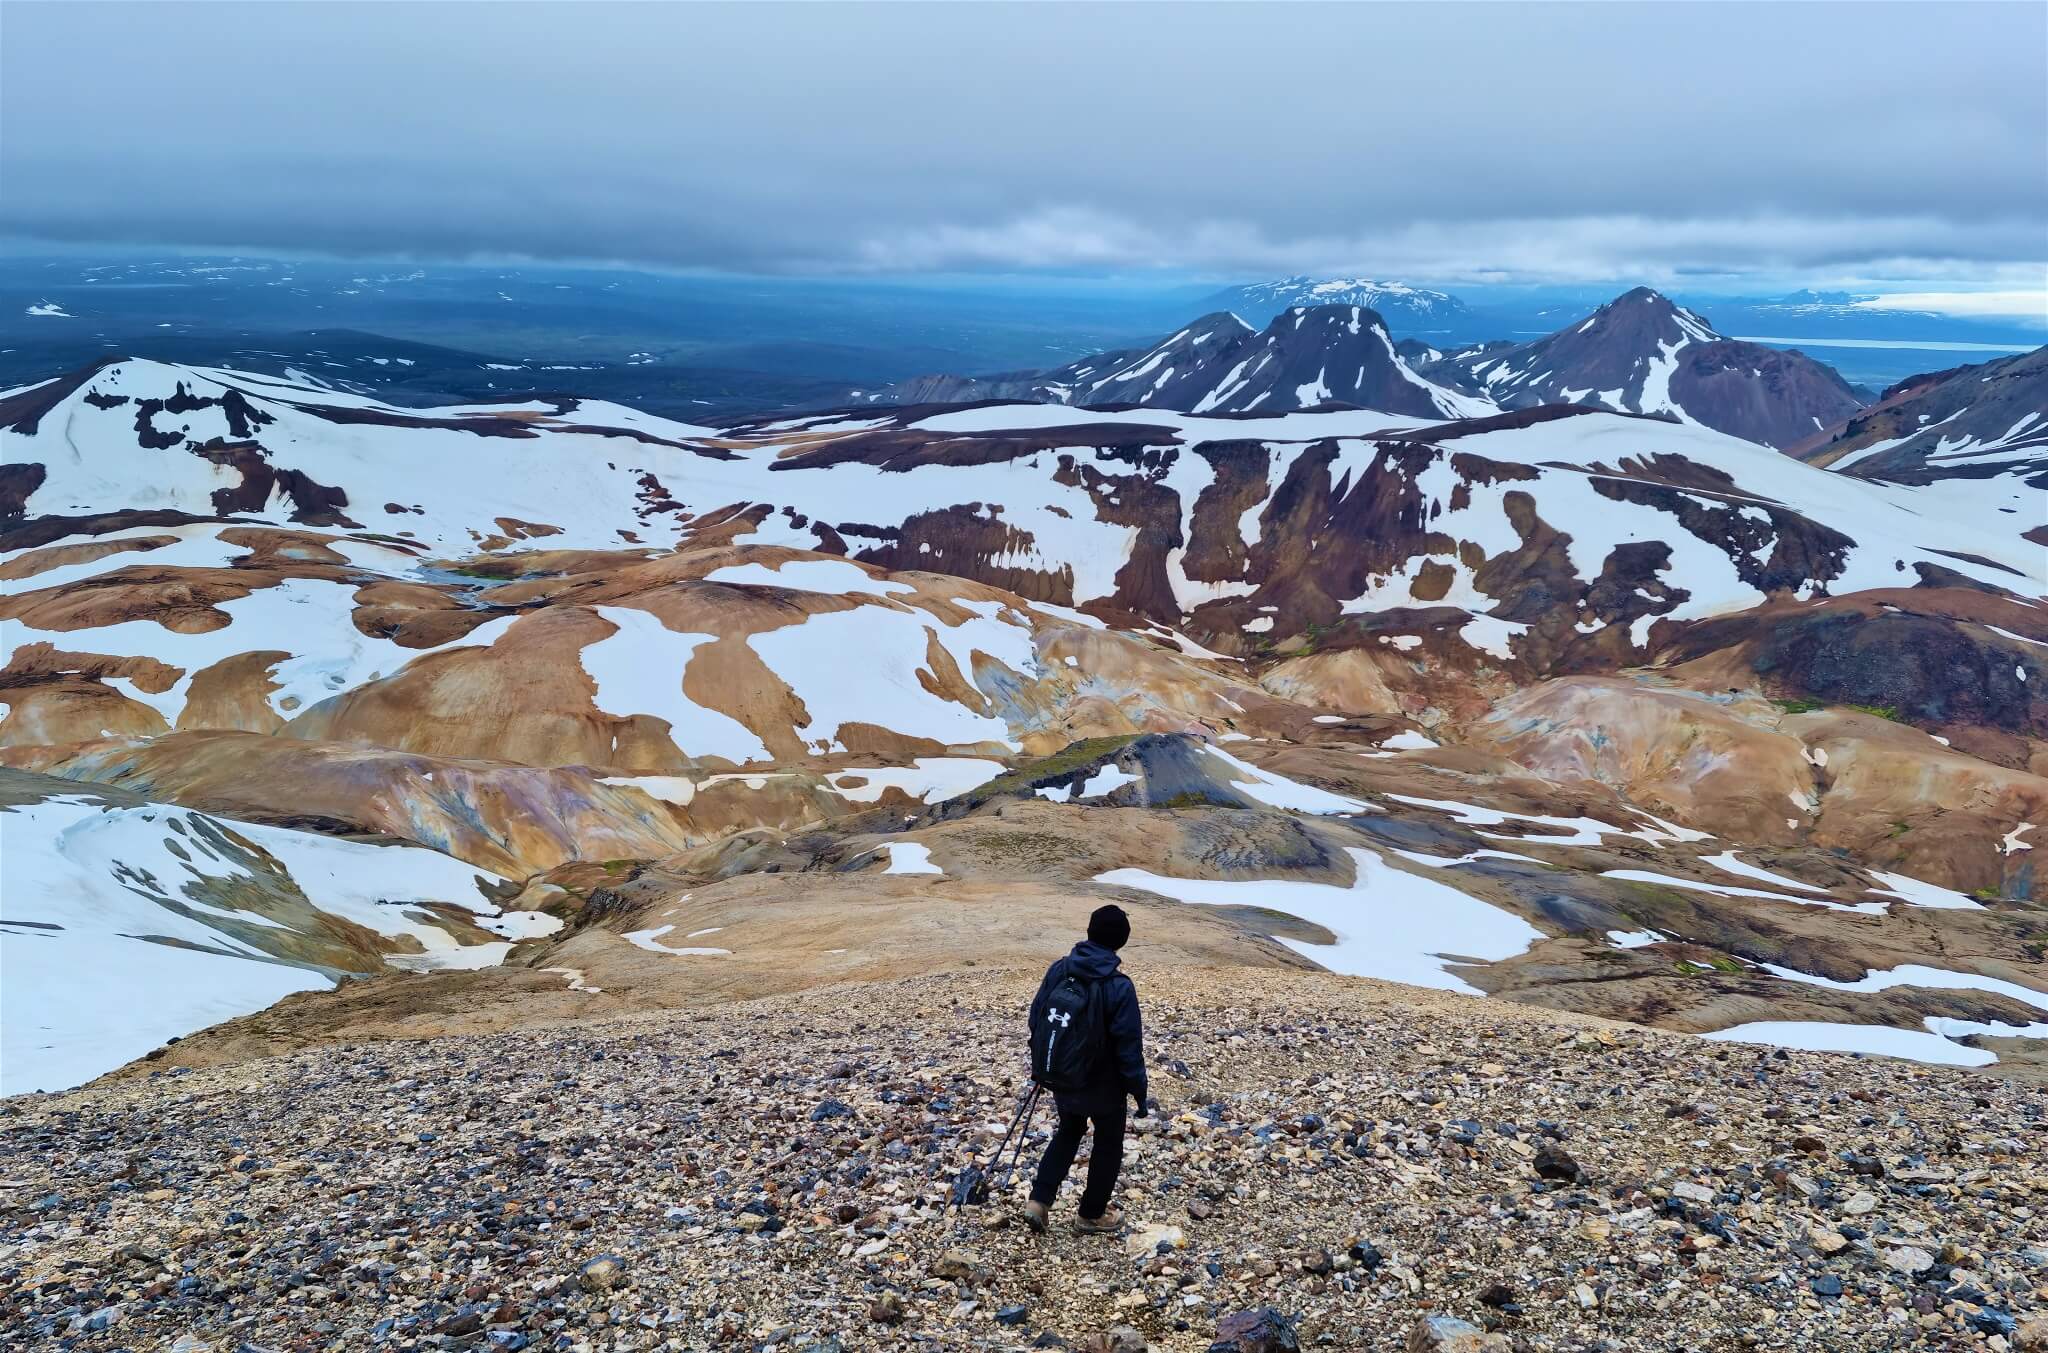 Snækollur – Hiking the highest peak of Kerlingarfjöll